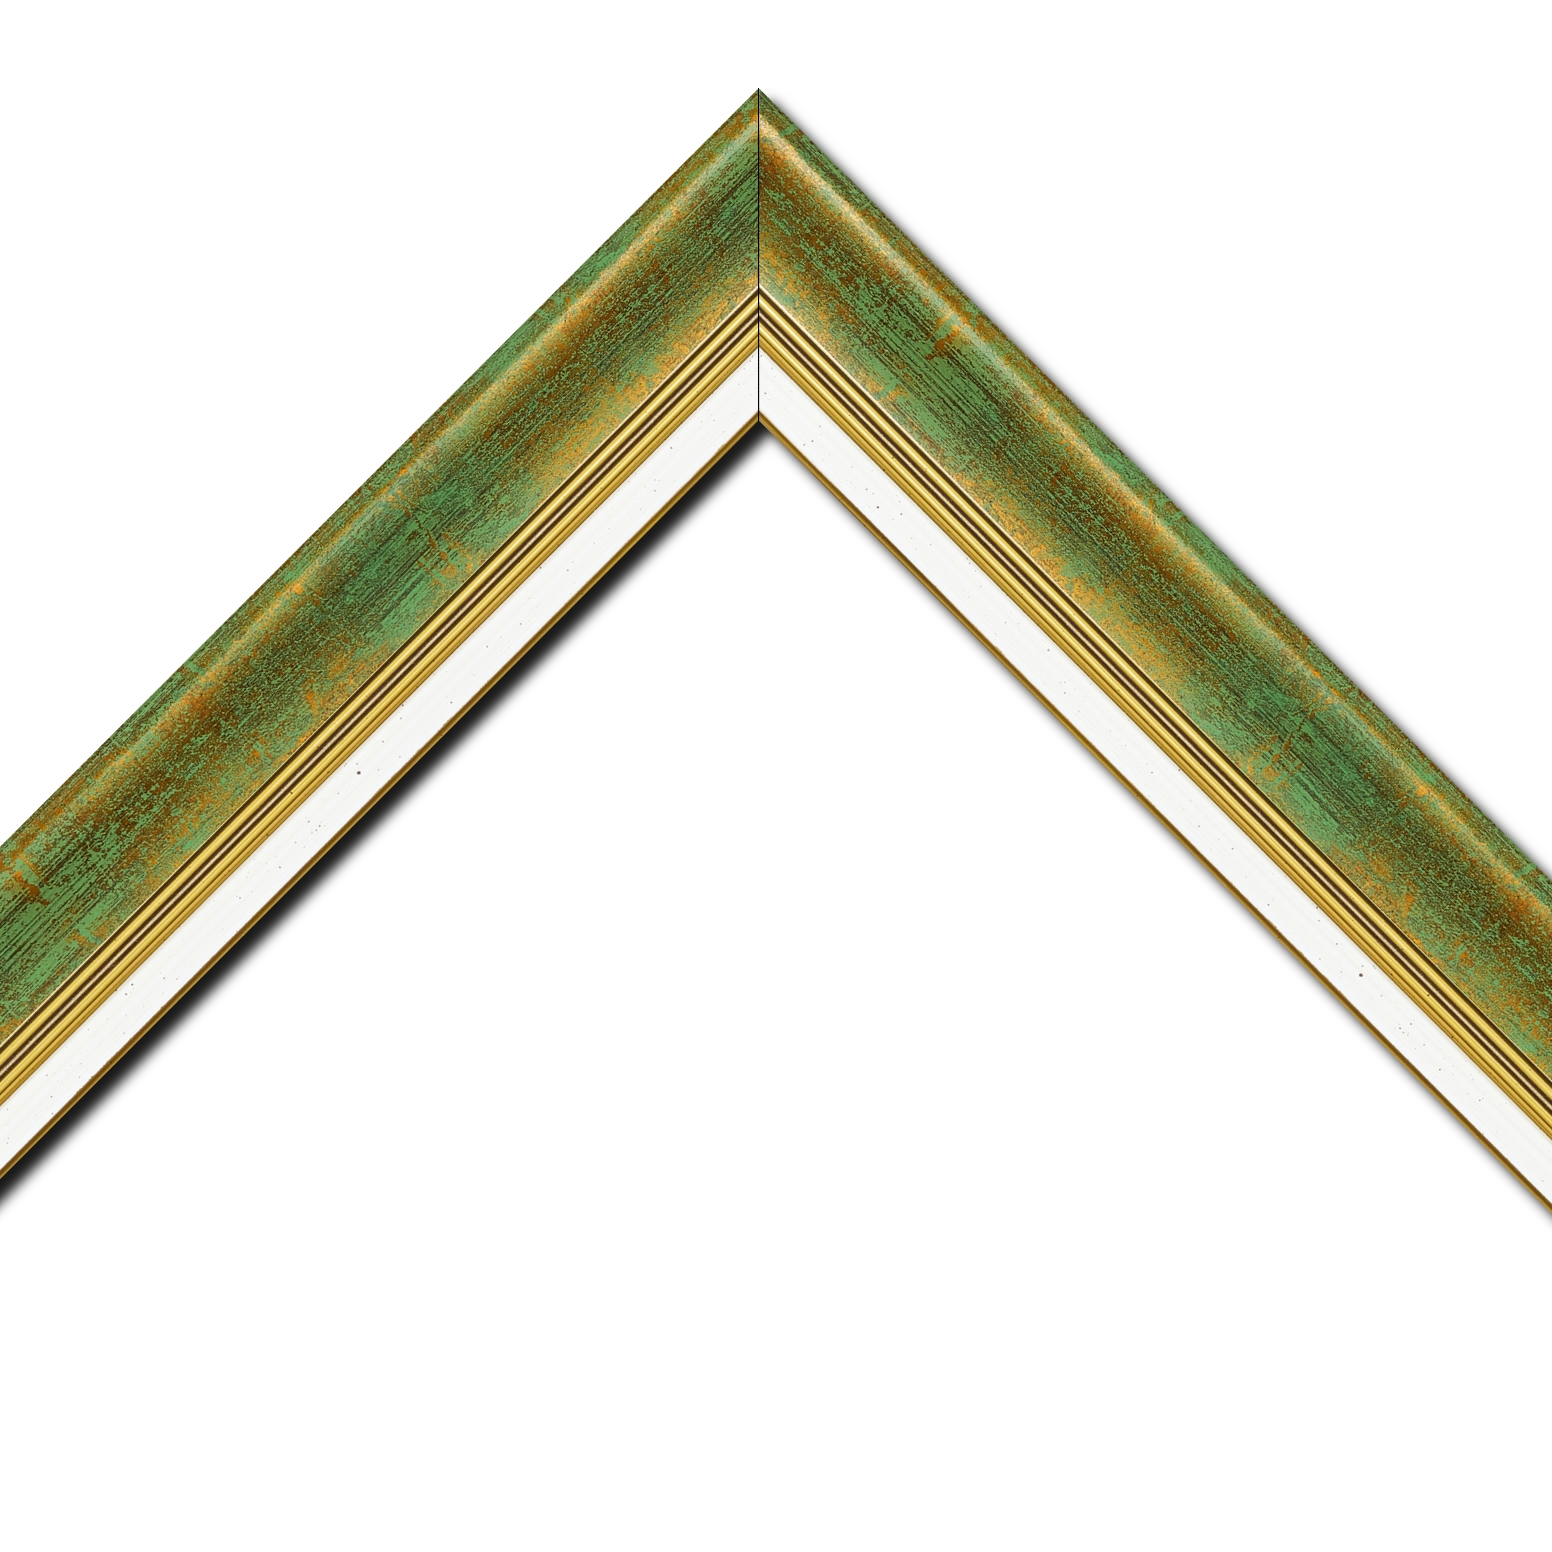 Baguette bois profil incurvé largeur 5.7cm de couleur vert fond or marie louise blanche mouchetée filet or intégré